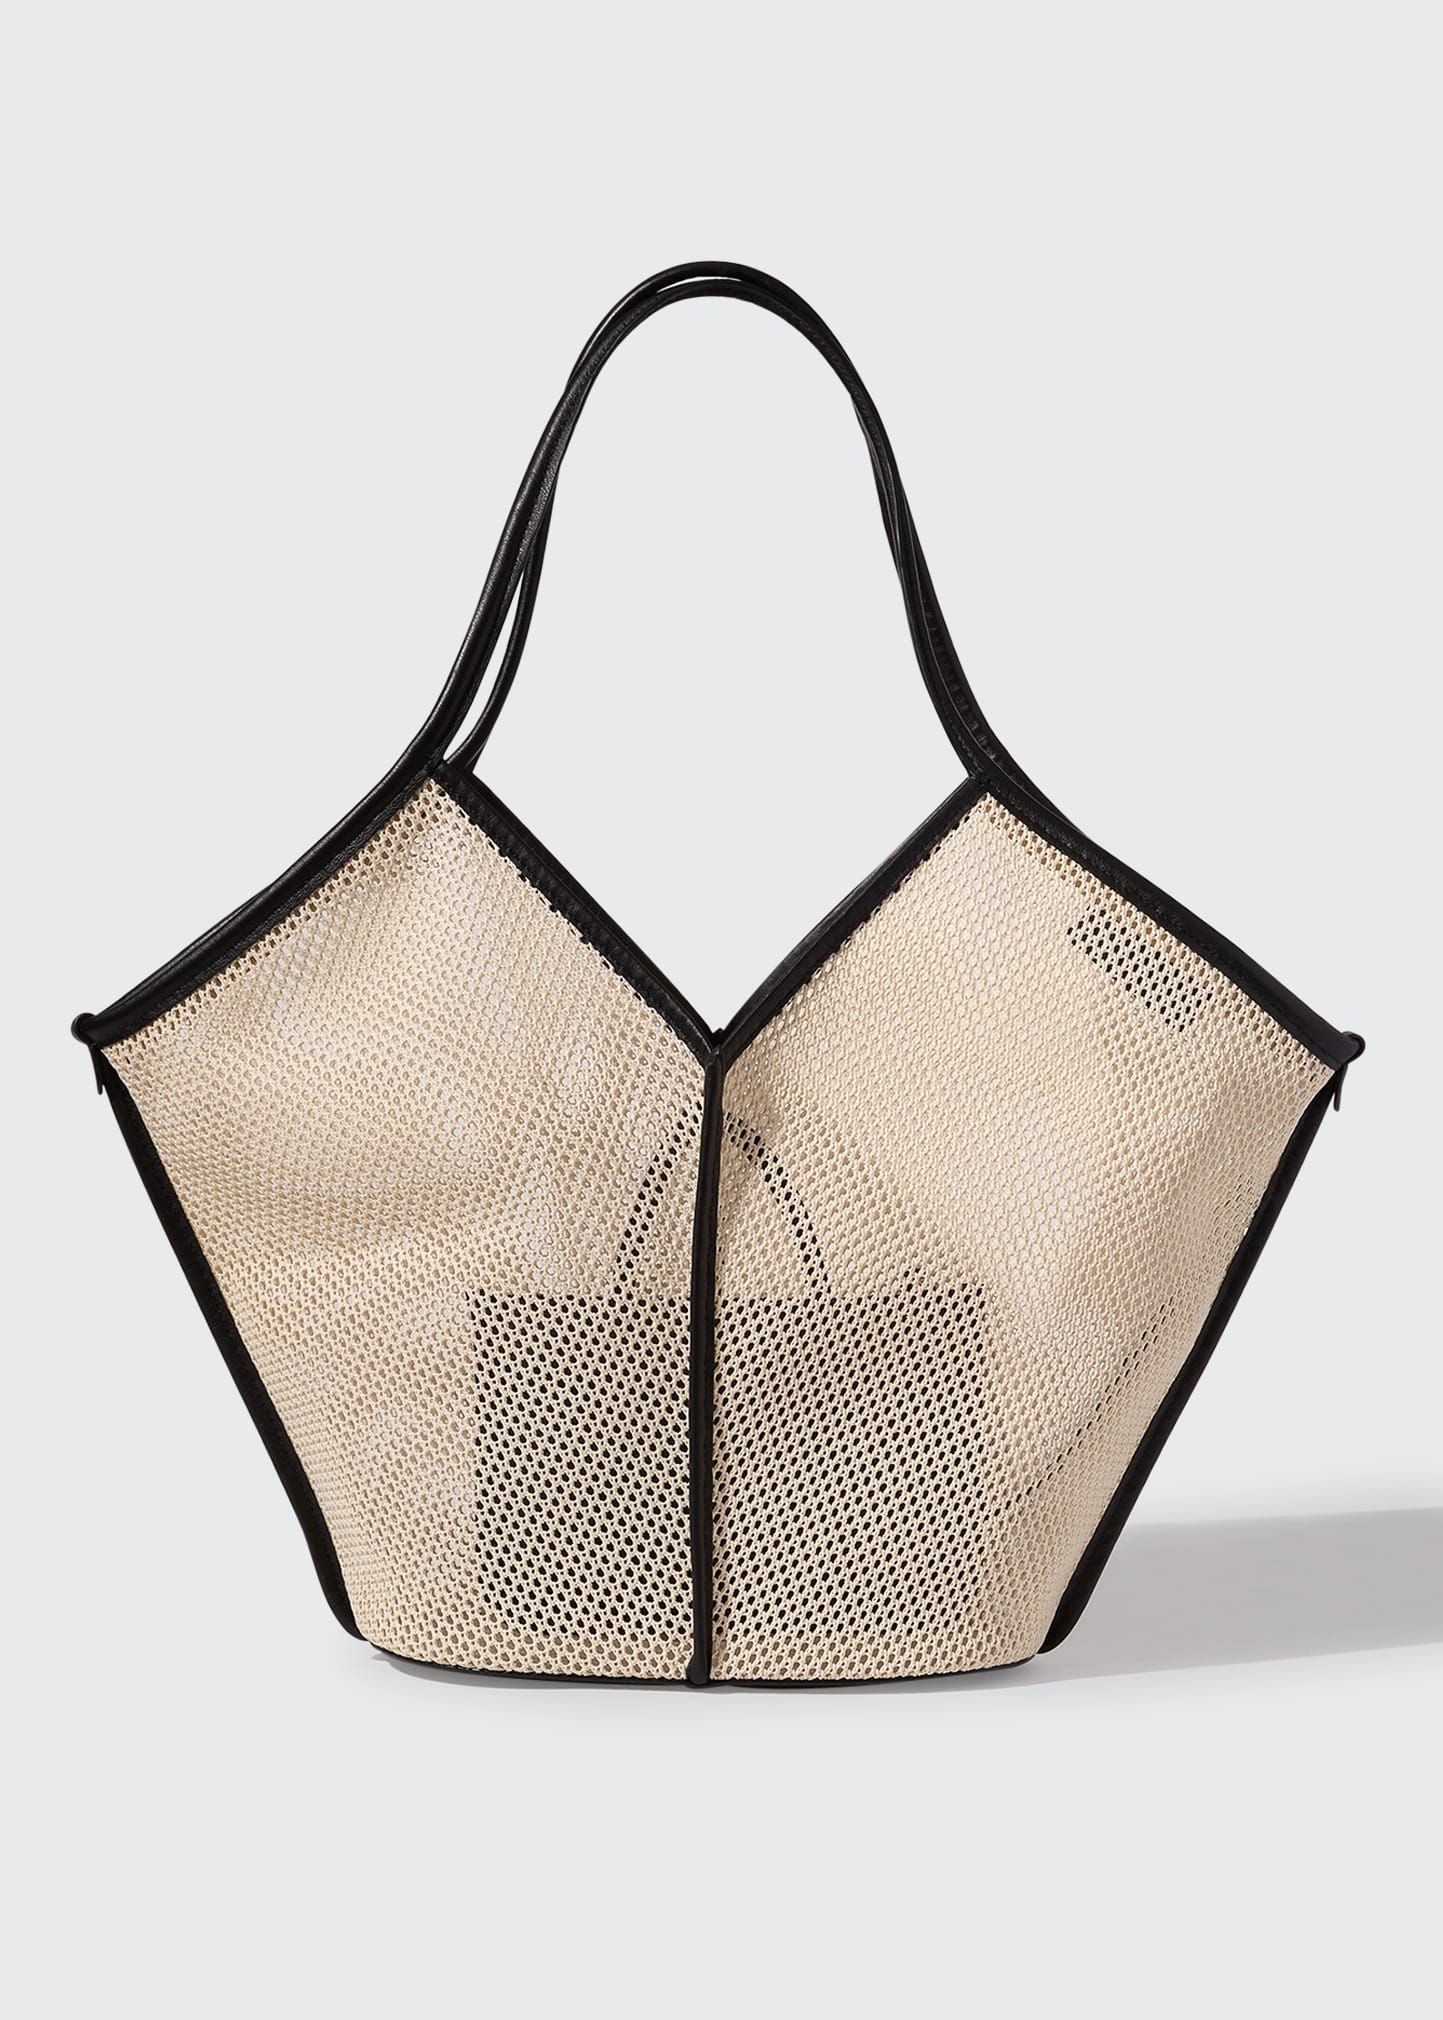 Calella Net Tote Bag | Bergdorf Goodman